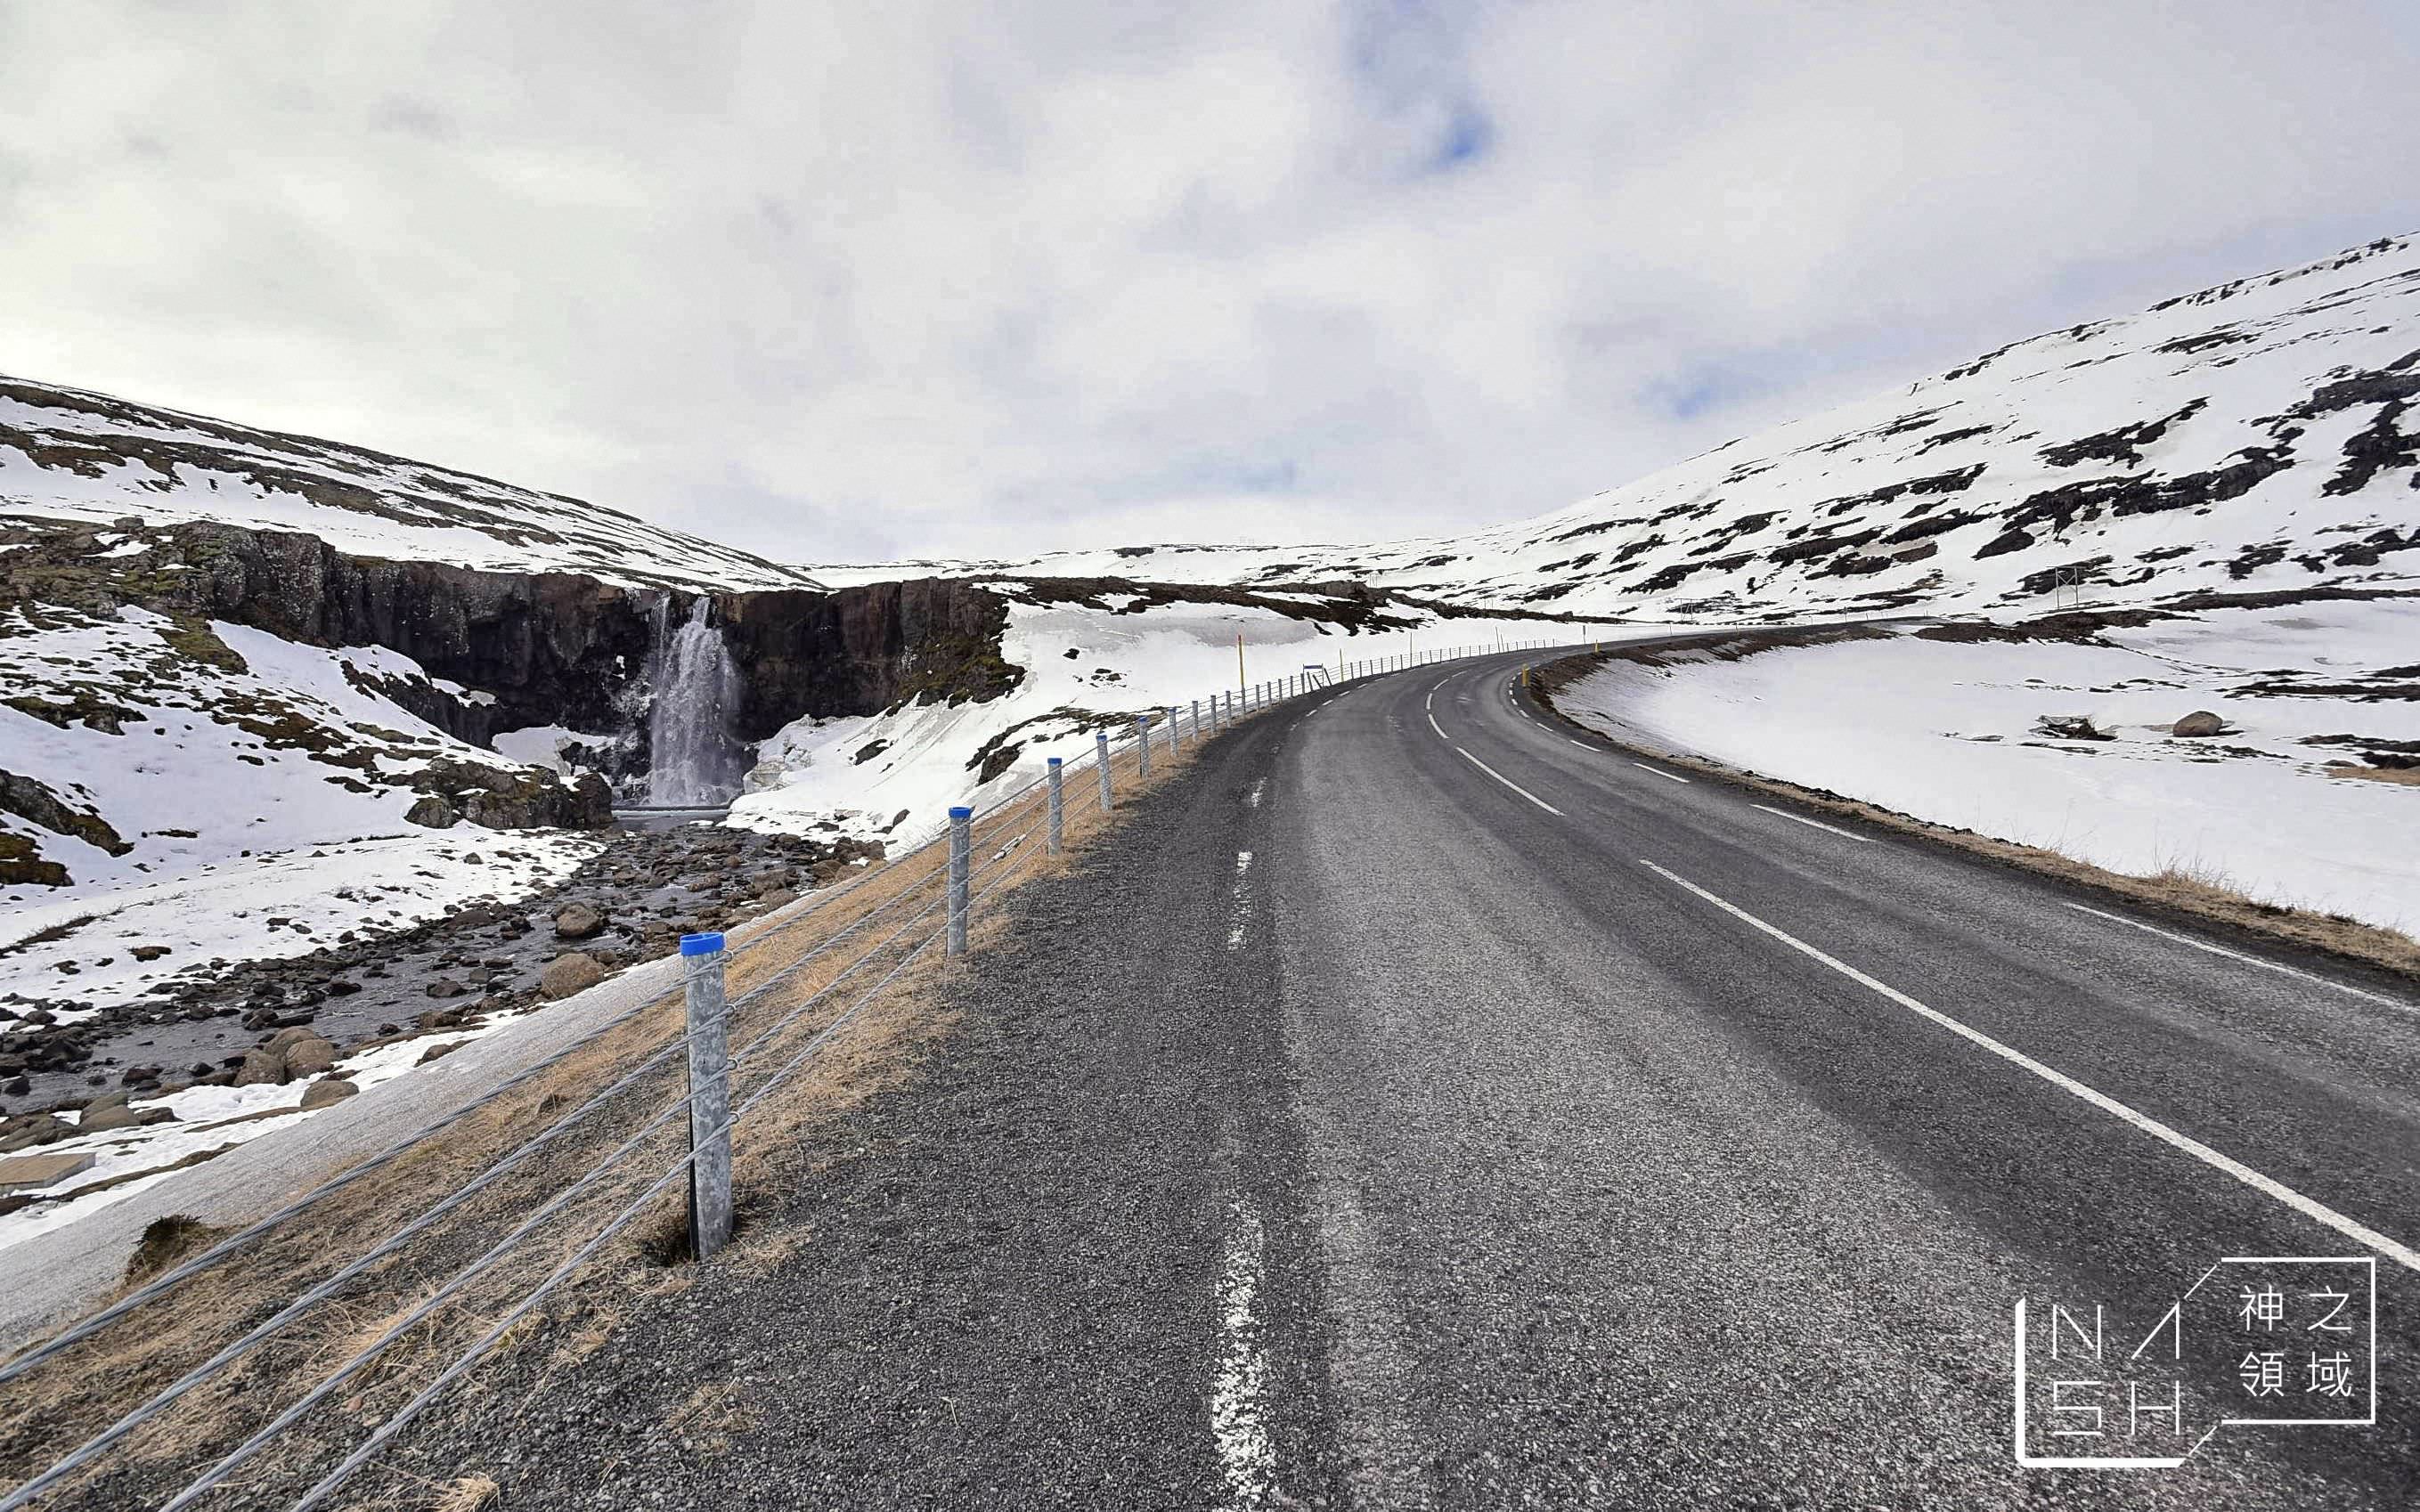 Seydisfjordur,冰島東部峽灣小鎮,白日夢冒險王滑板公路,冰島自由行環島景點推薦,塞濟斯菲厄澤